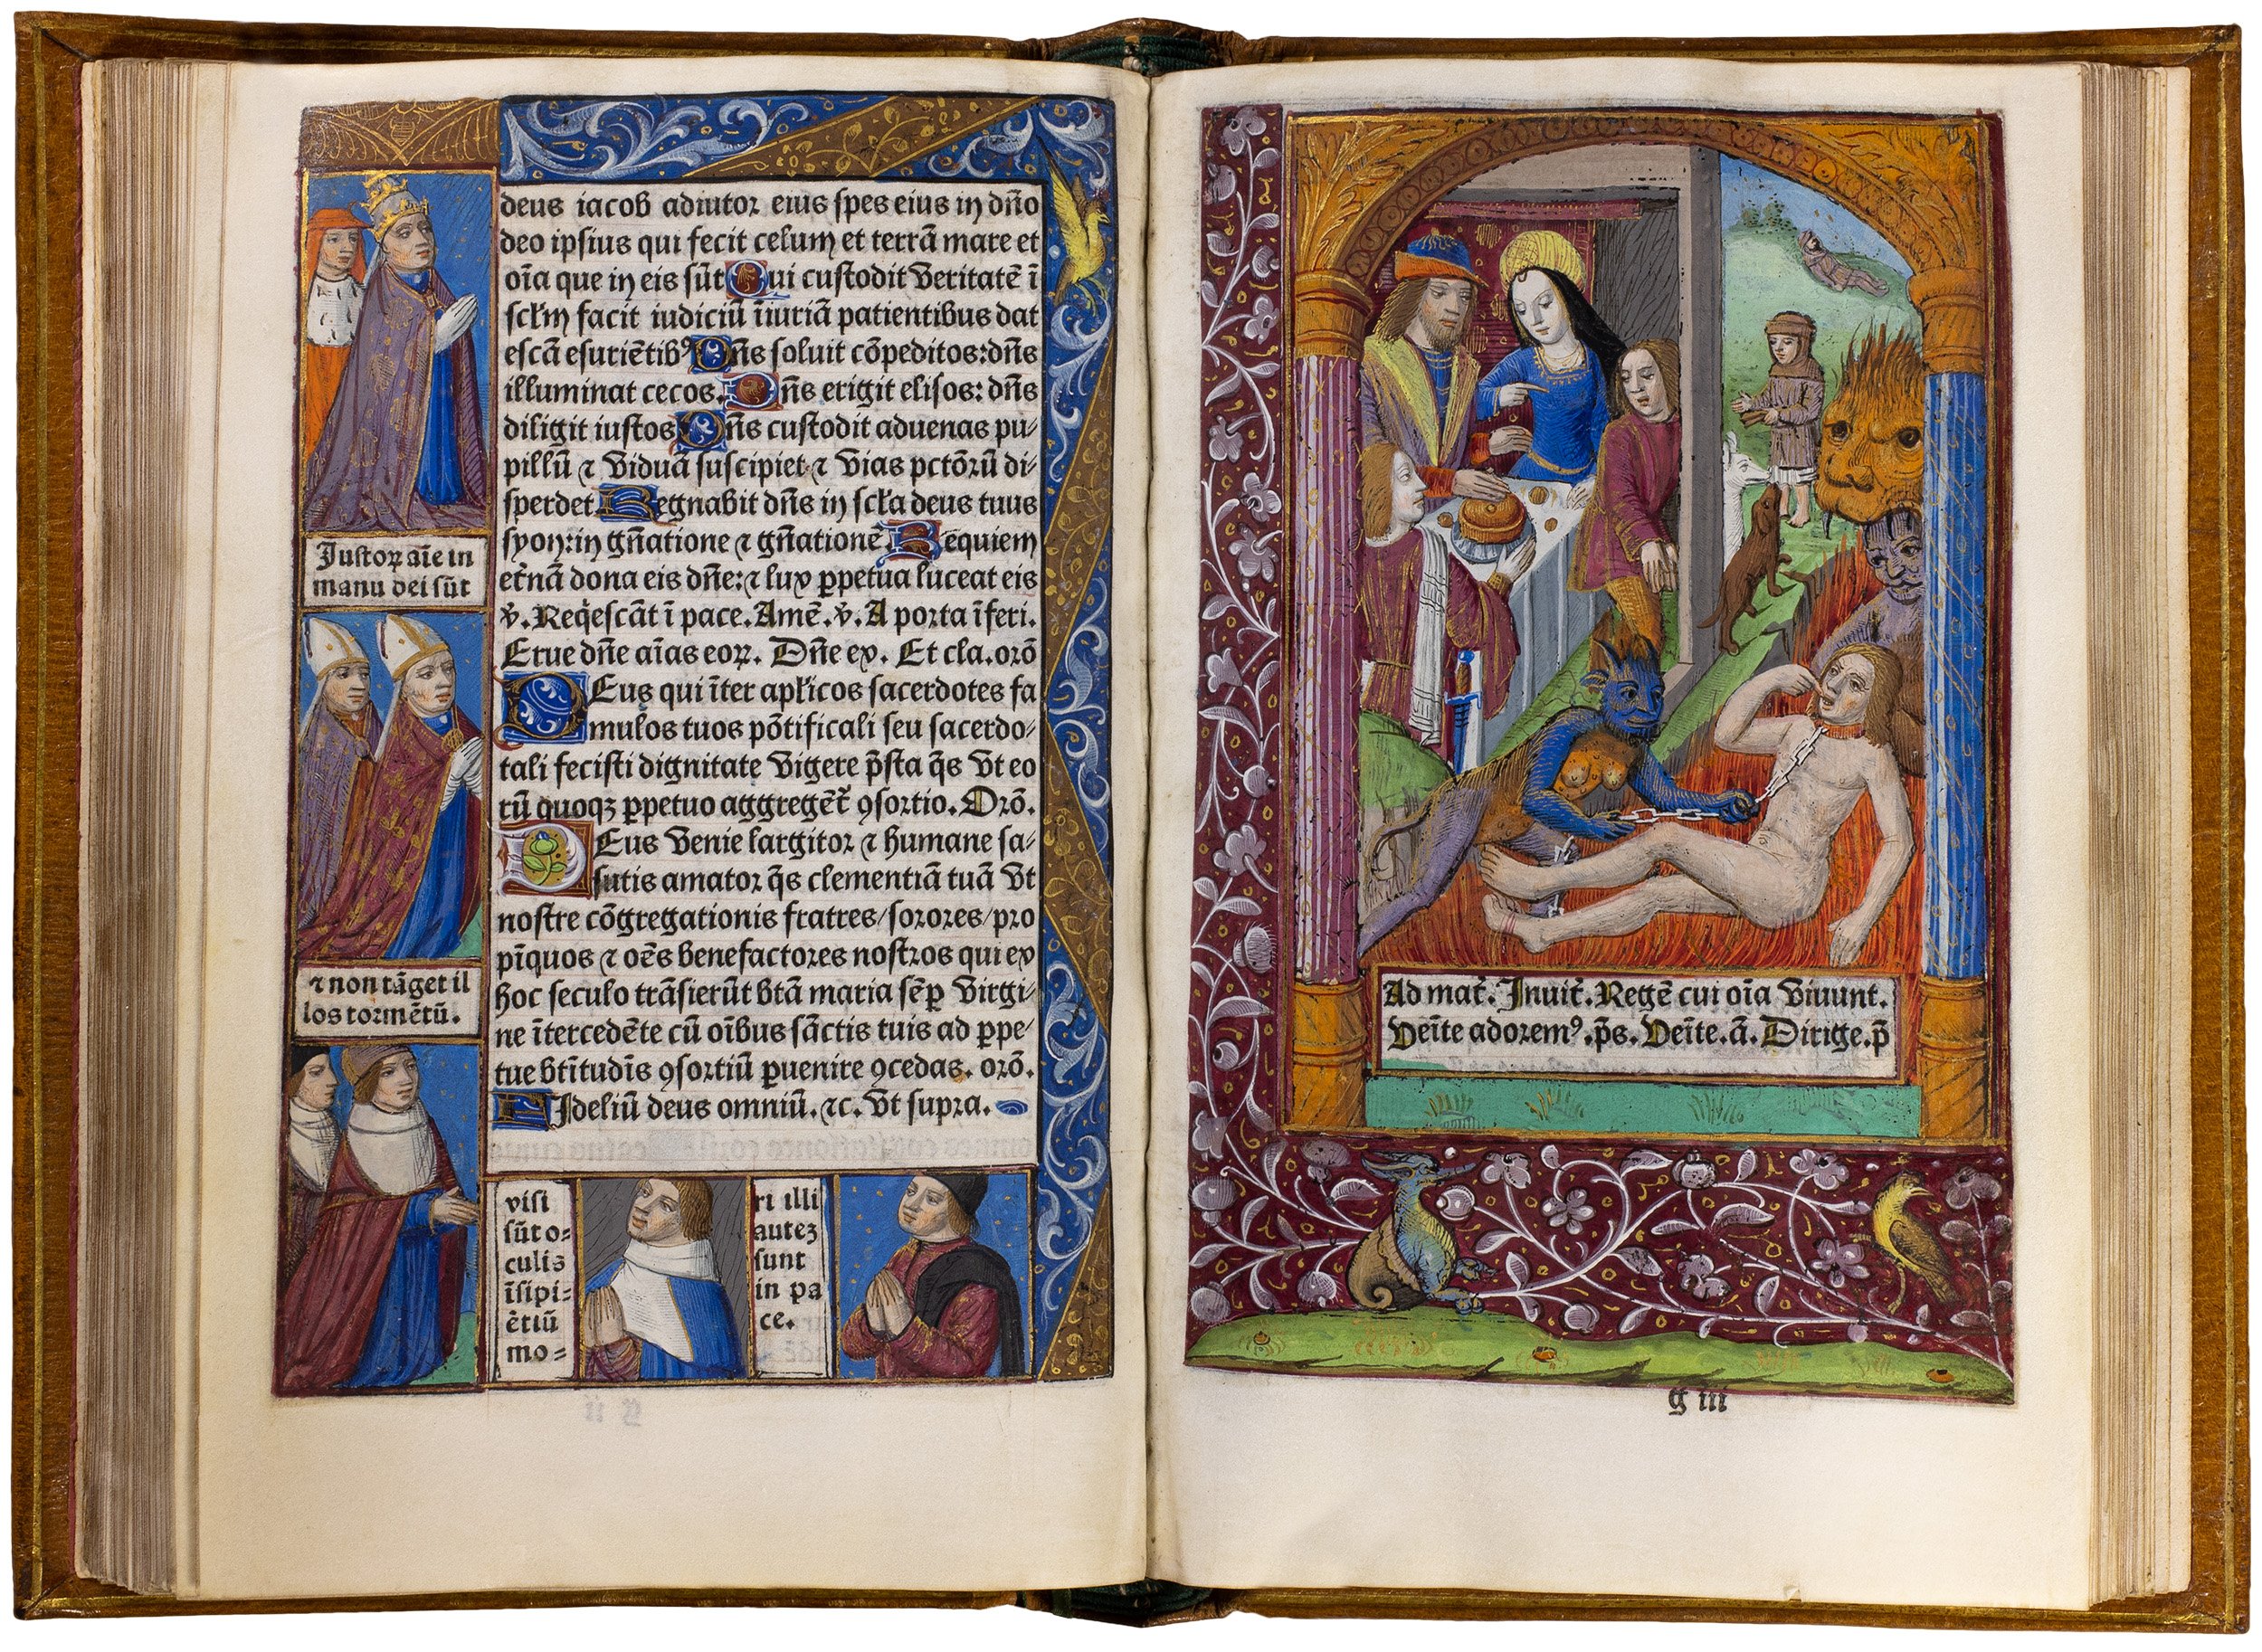 Horae-bmv-pigouchet-19-april-1494-pigouchet-robert-gaguin-illuminated-vellum-copy-63.jpg